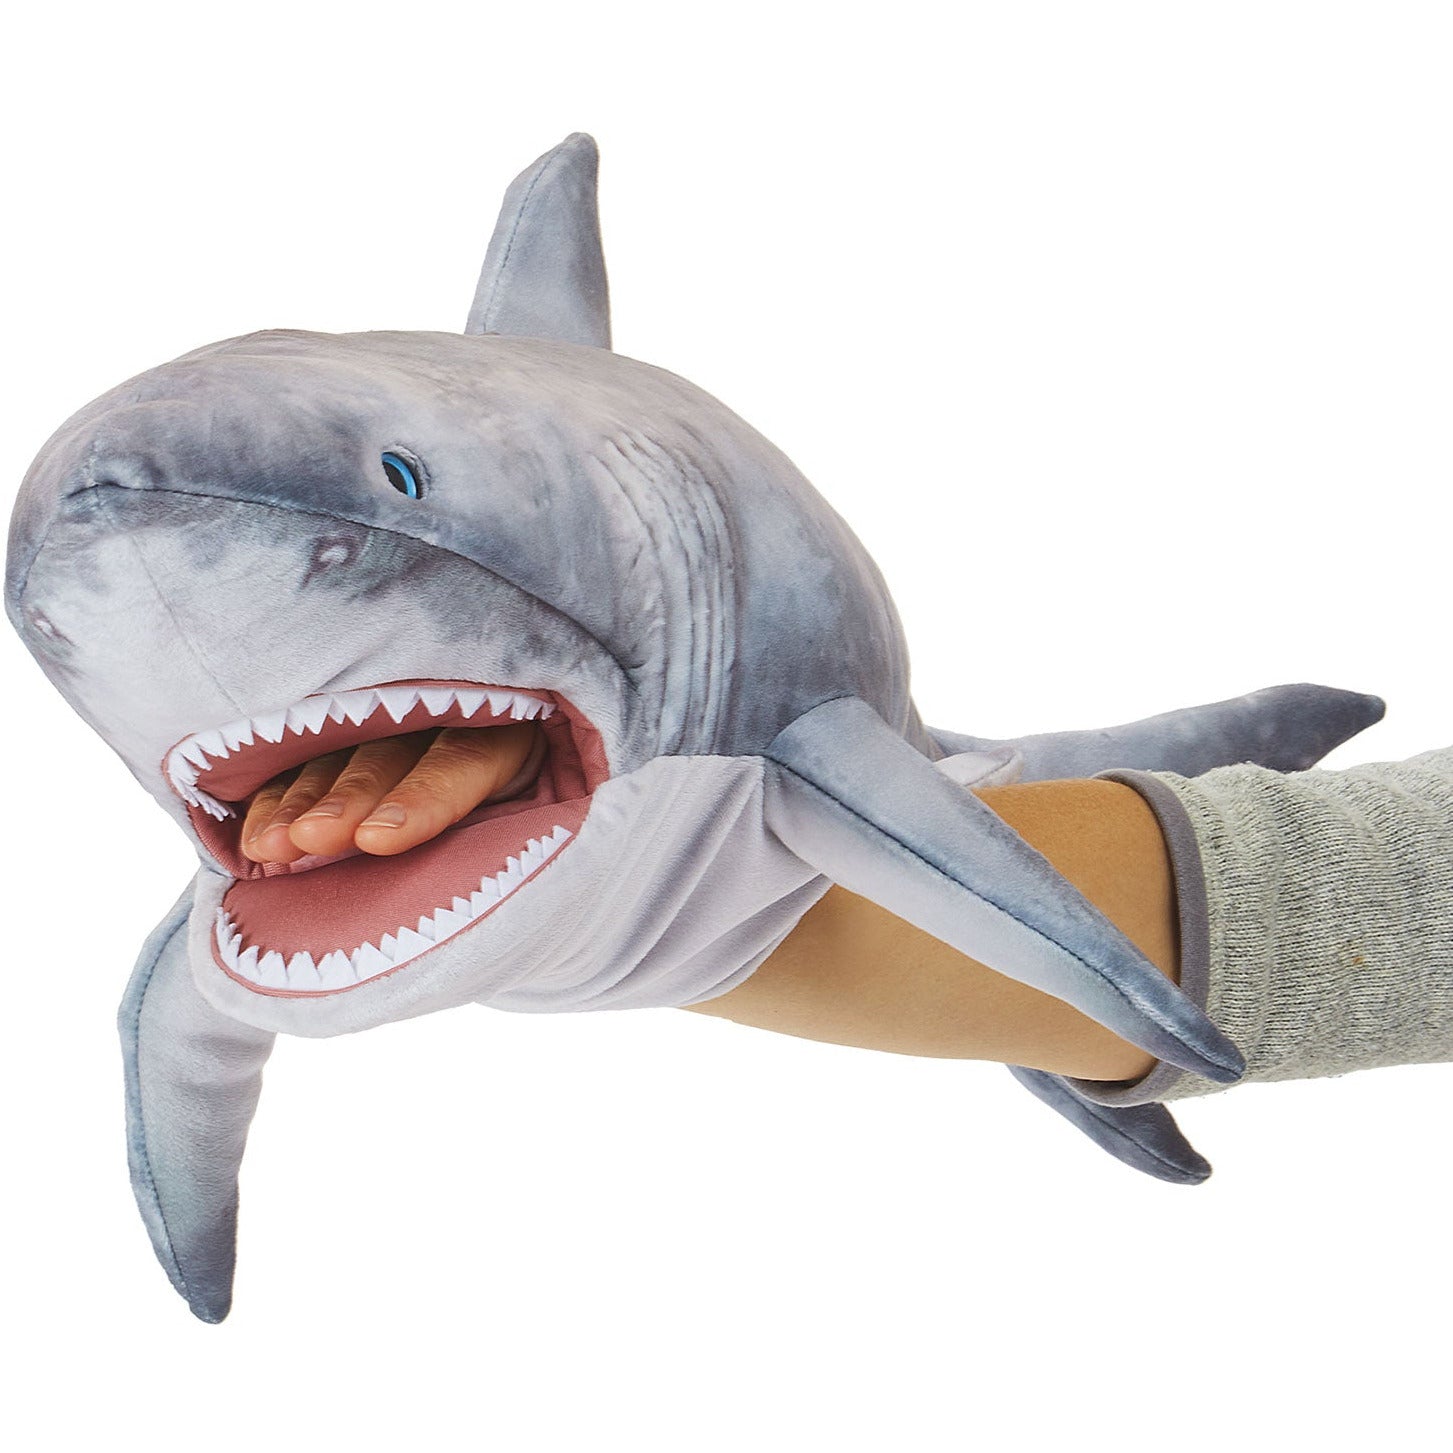 Folkmanis Puppets | Weißer Hai / Great white shark